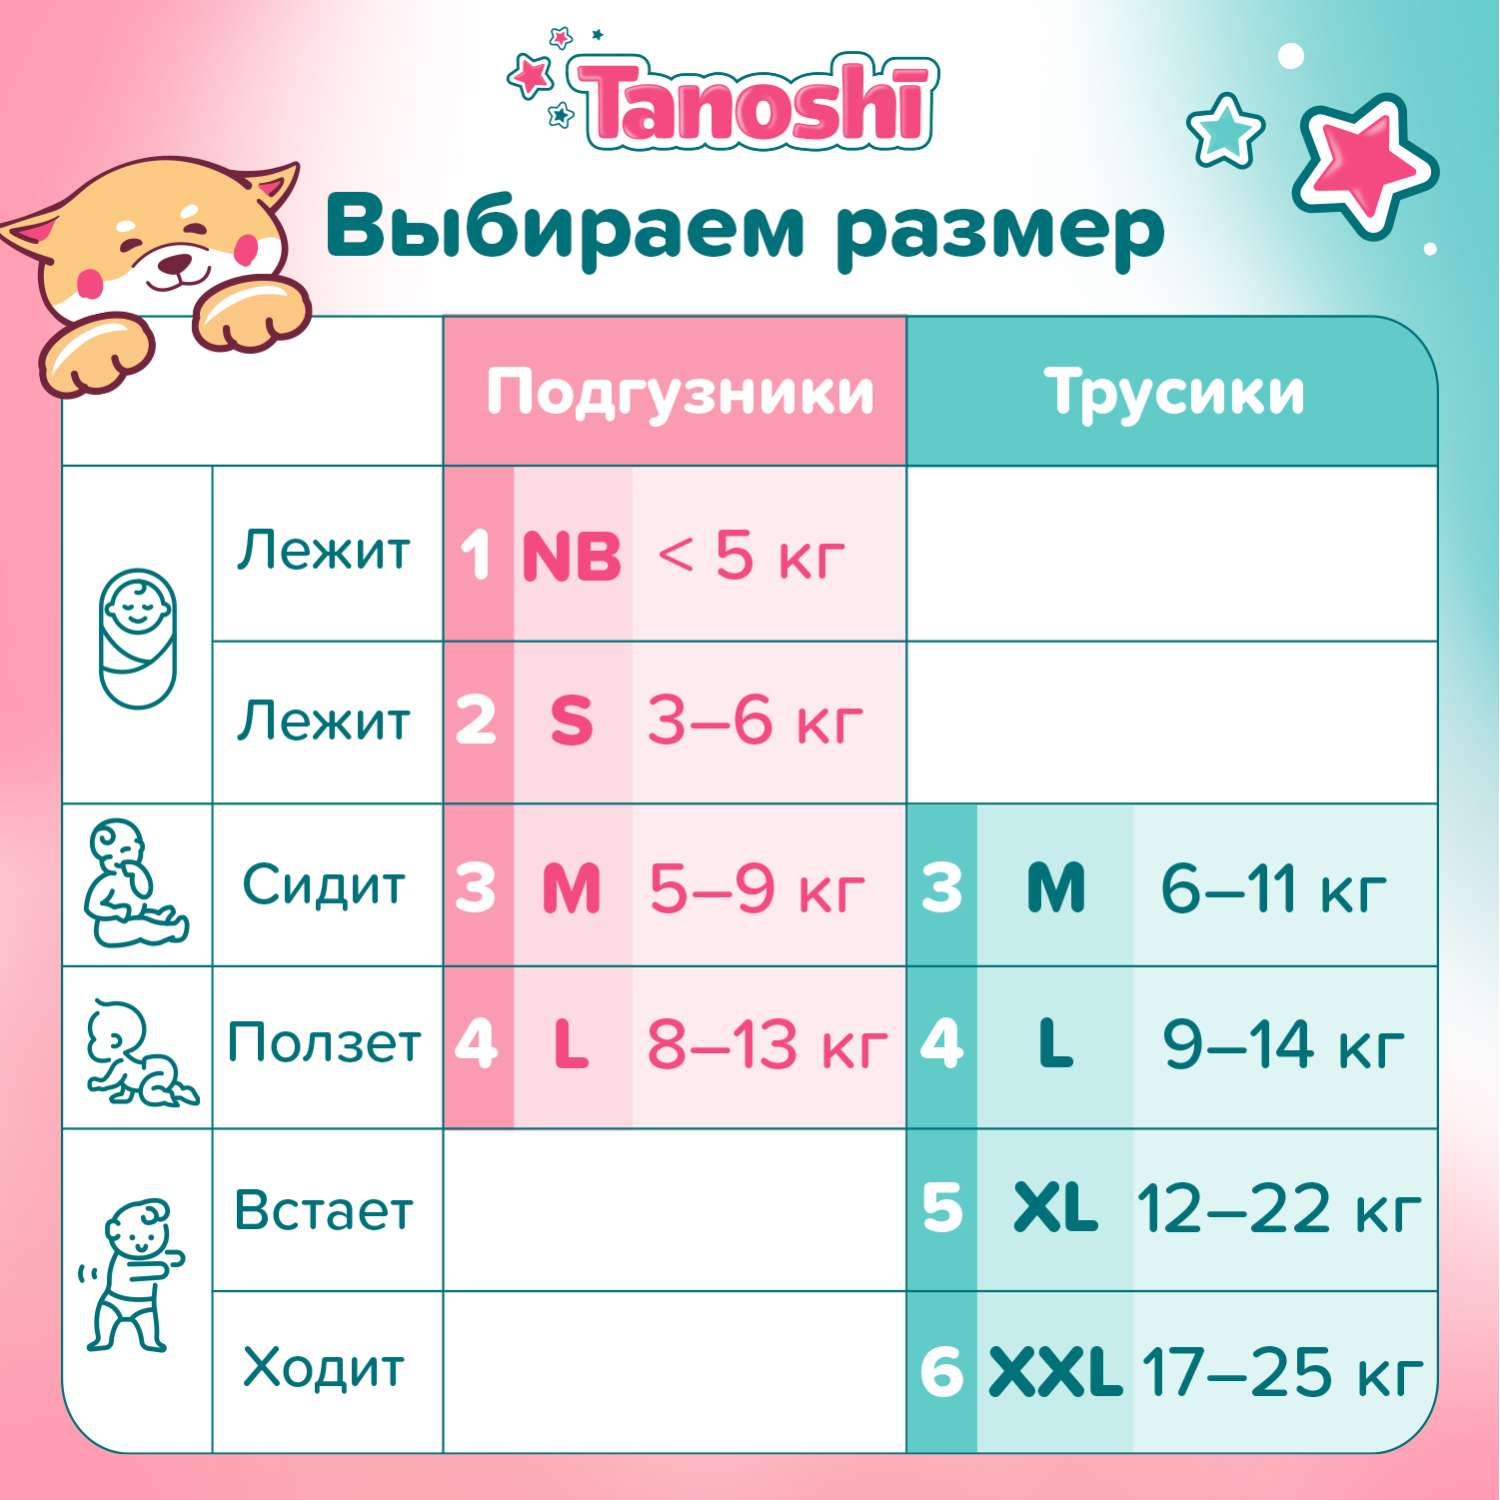 Подгузники Tanoshi для новорожденных NB до 5кг 34шт - фото 9